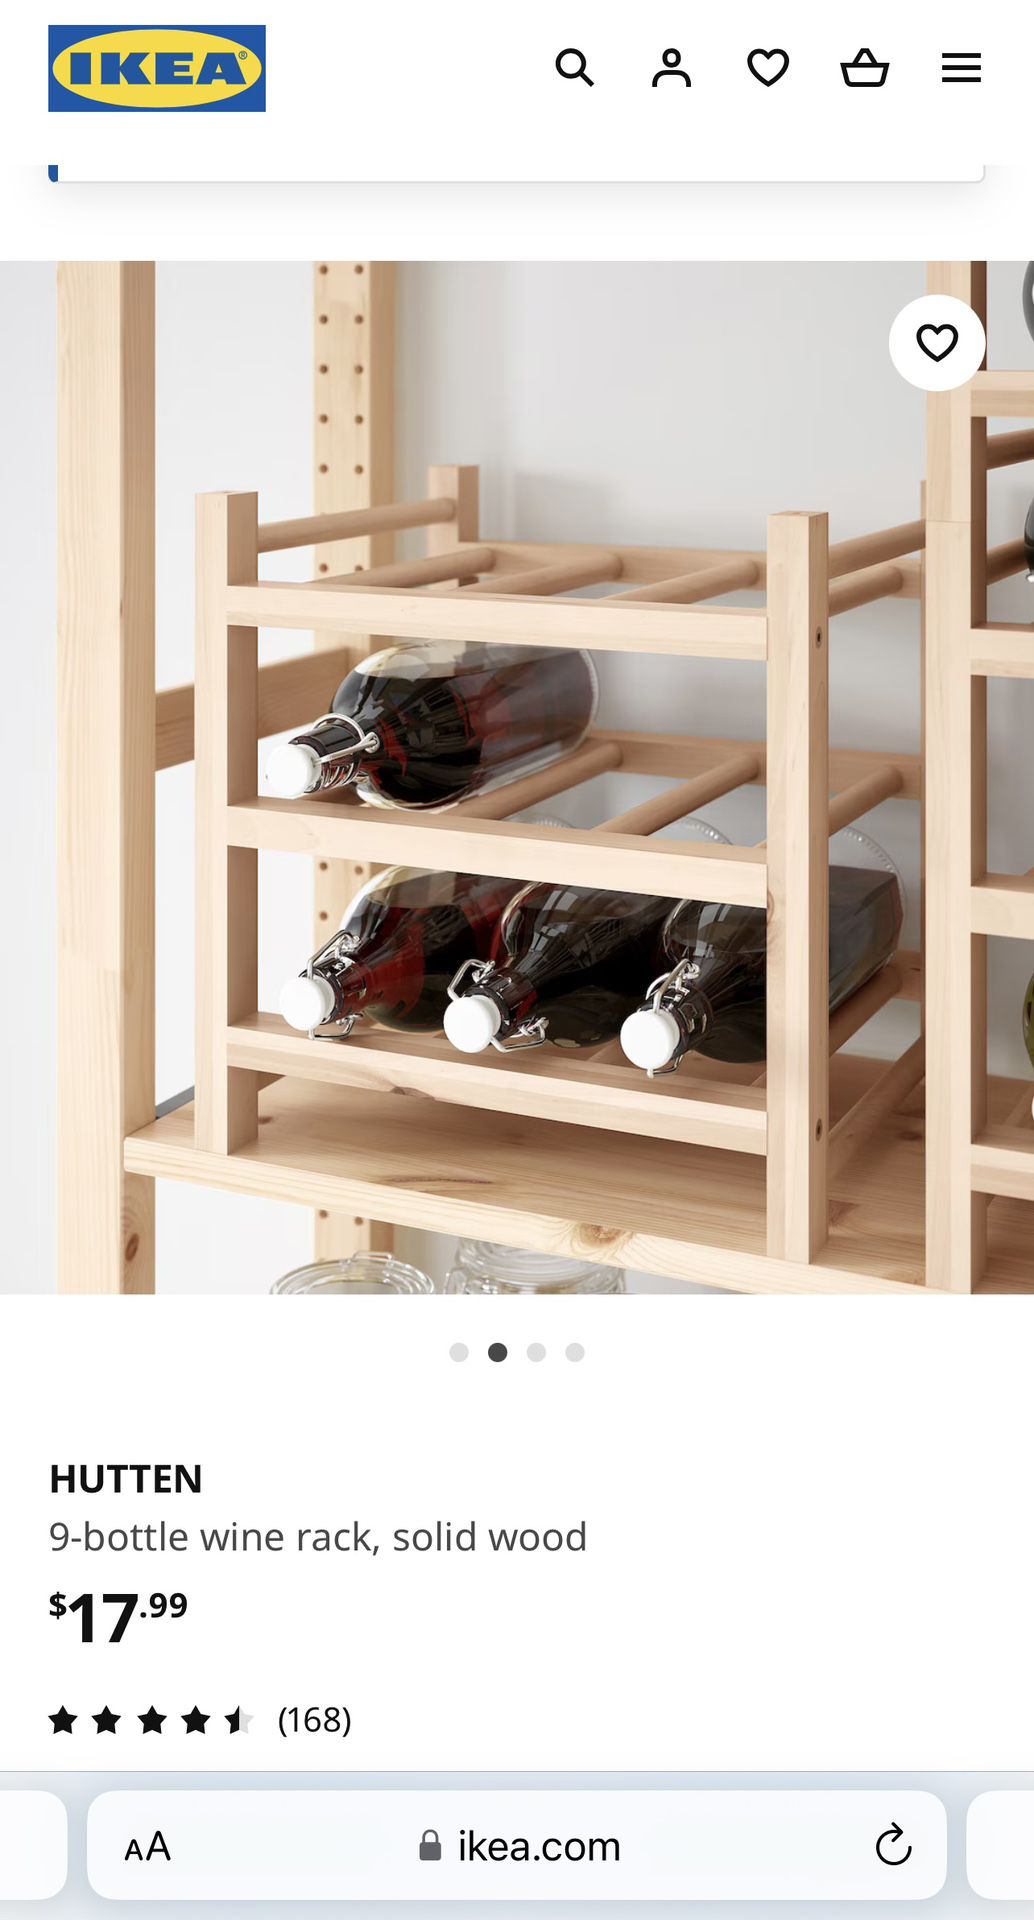 IKEA Wine Racks - Unopened 